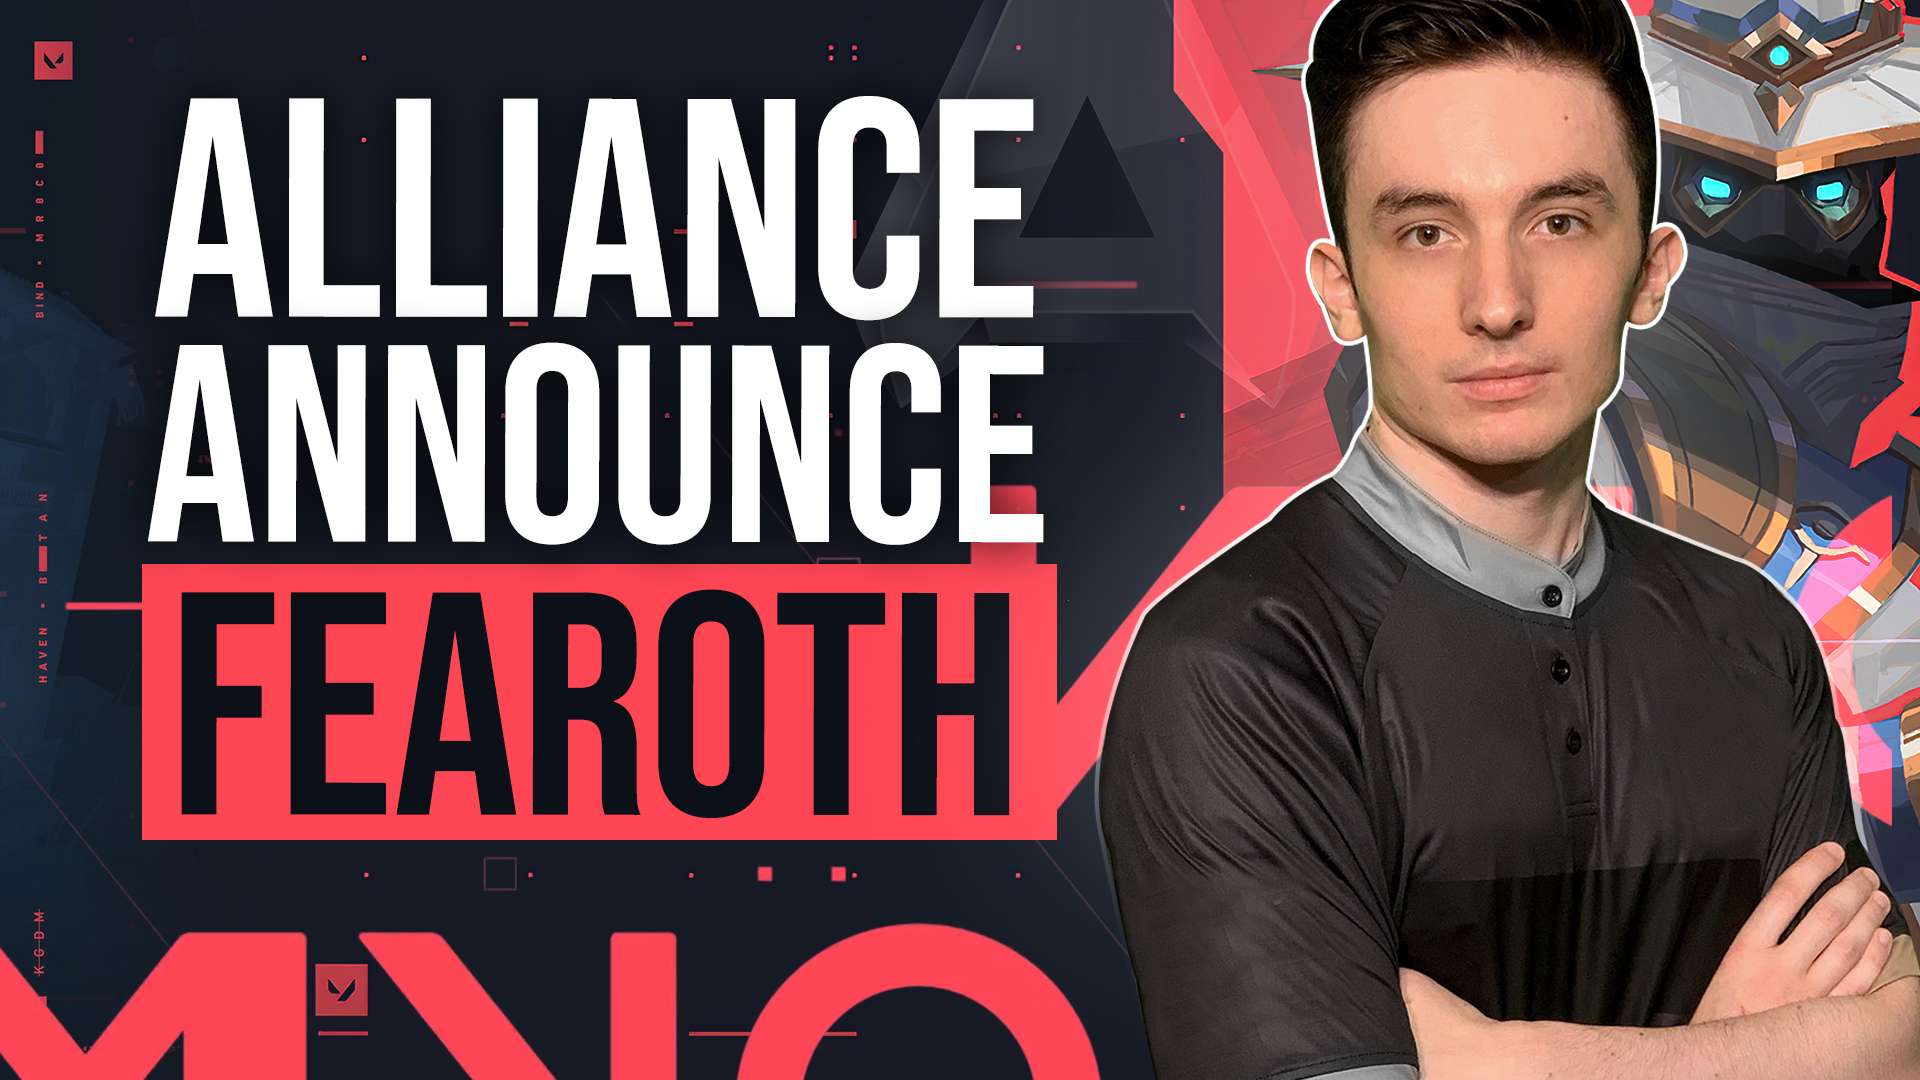 Alliance announced Fearoth as Valorant IGL